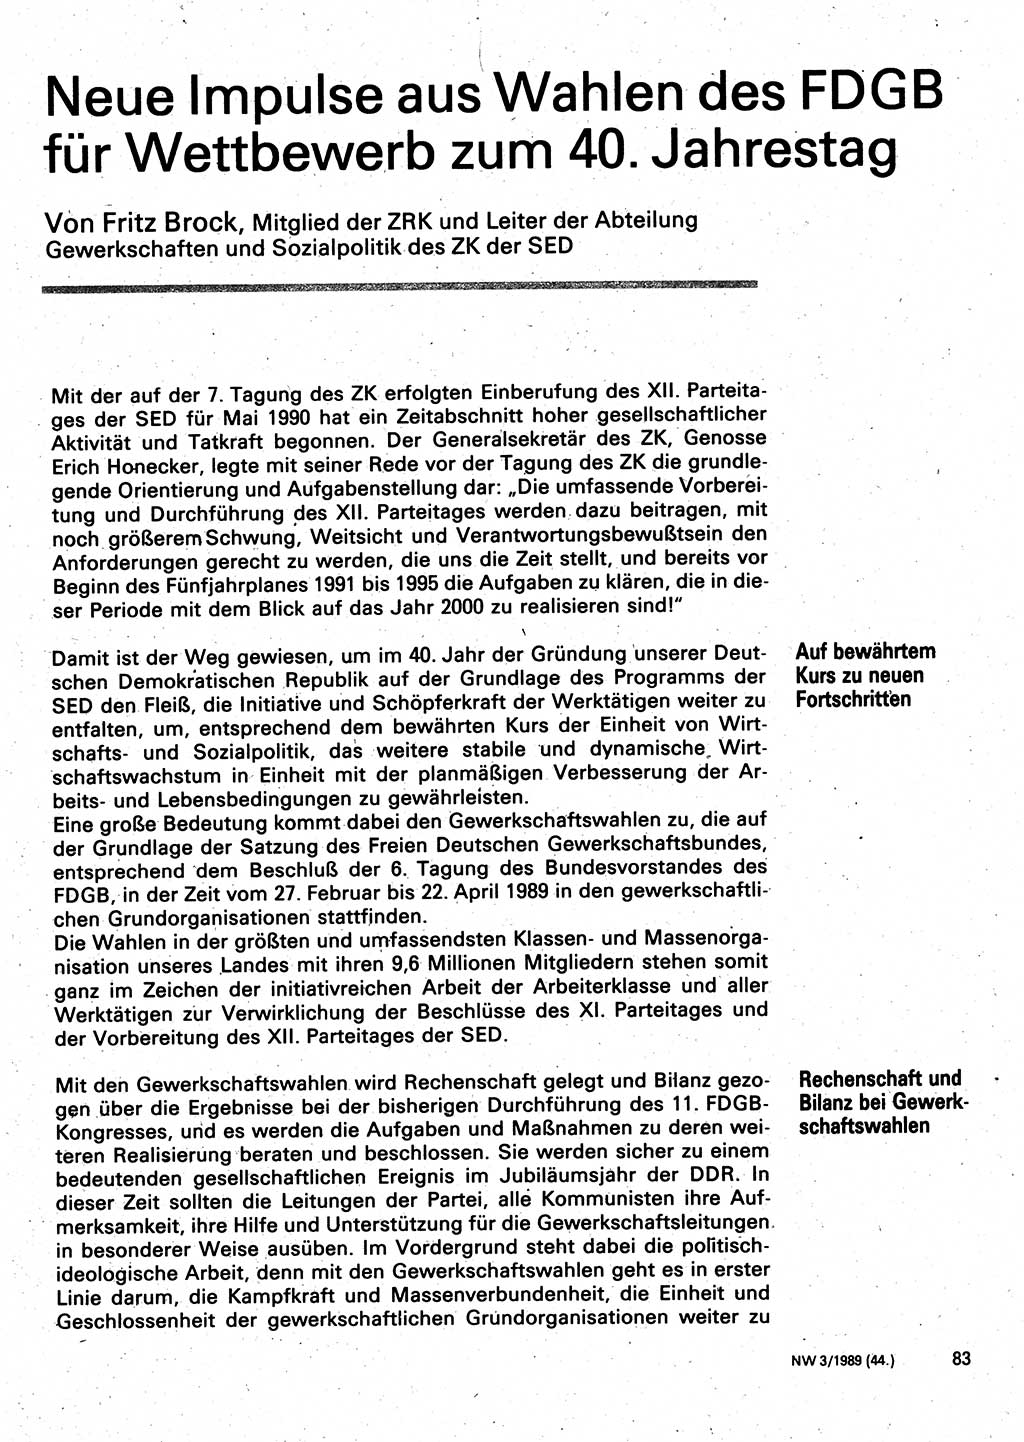 Neuer Weg (NW), Organ des Zentralkomitees (ZK) der SED (Sozialistische Einheitspartei Deutschlands) für Fragen des Parteilebens, 44. Jahrgang [Deutsche Demokratische Republik (DDR)] 1989, Seite 83 (NW ZK SED DDR 1989, S. 83)